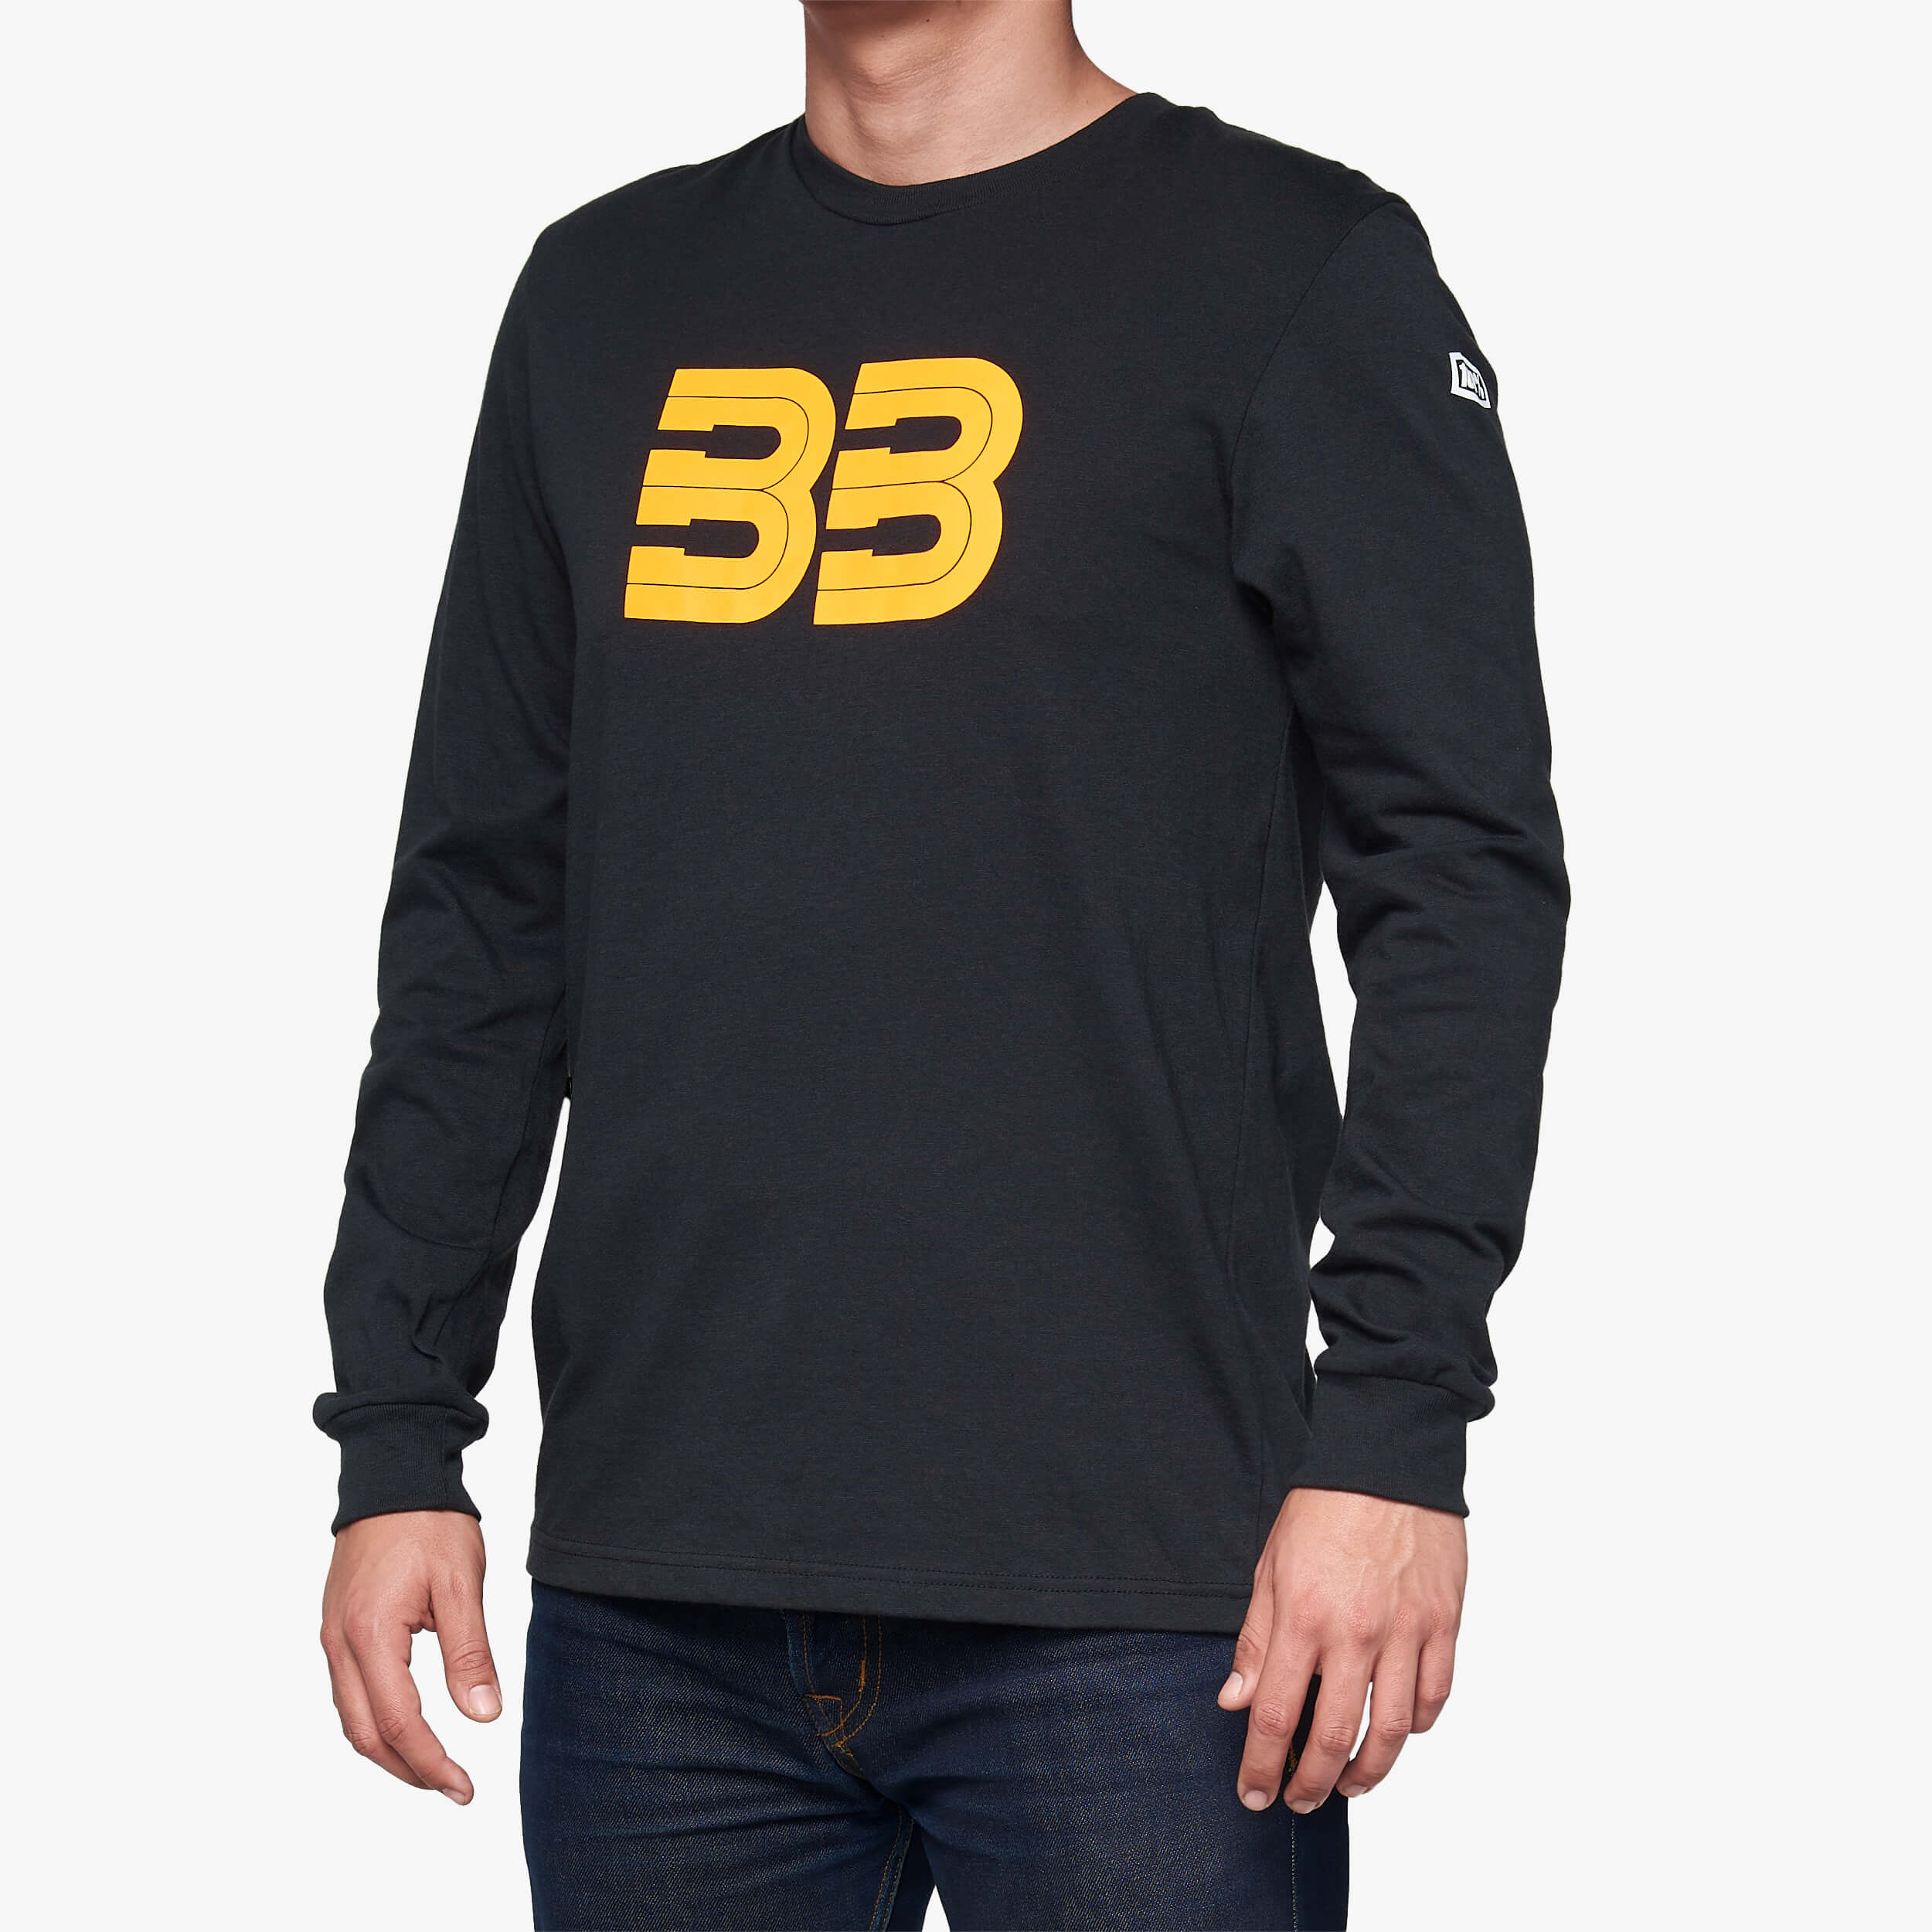 BB33 Long Sleeve T-Shirt Black